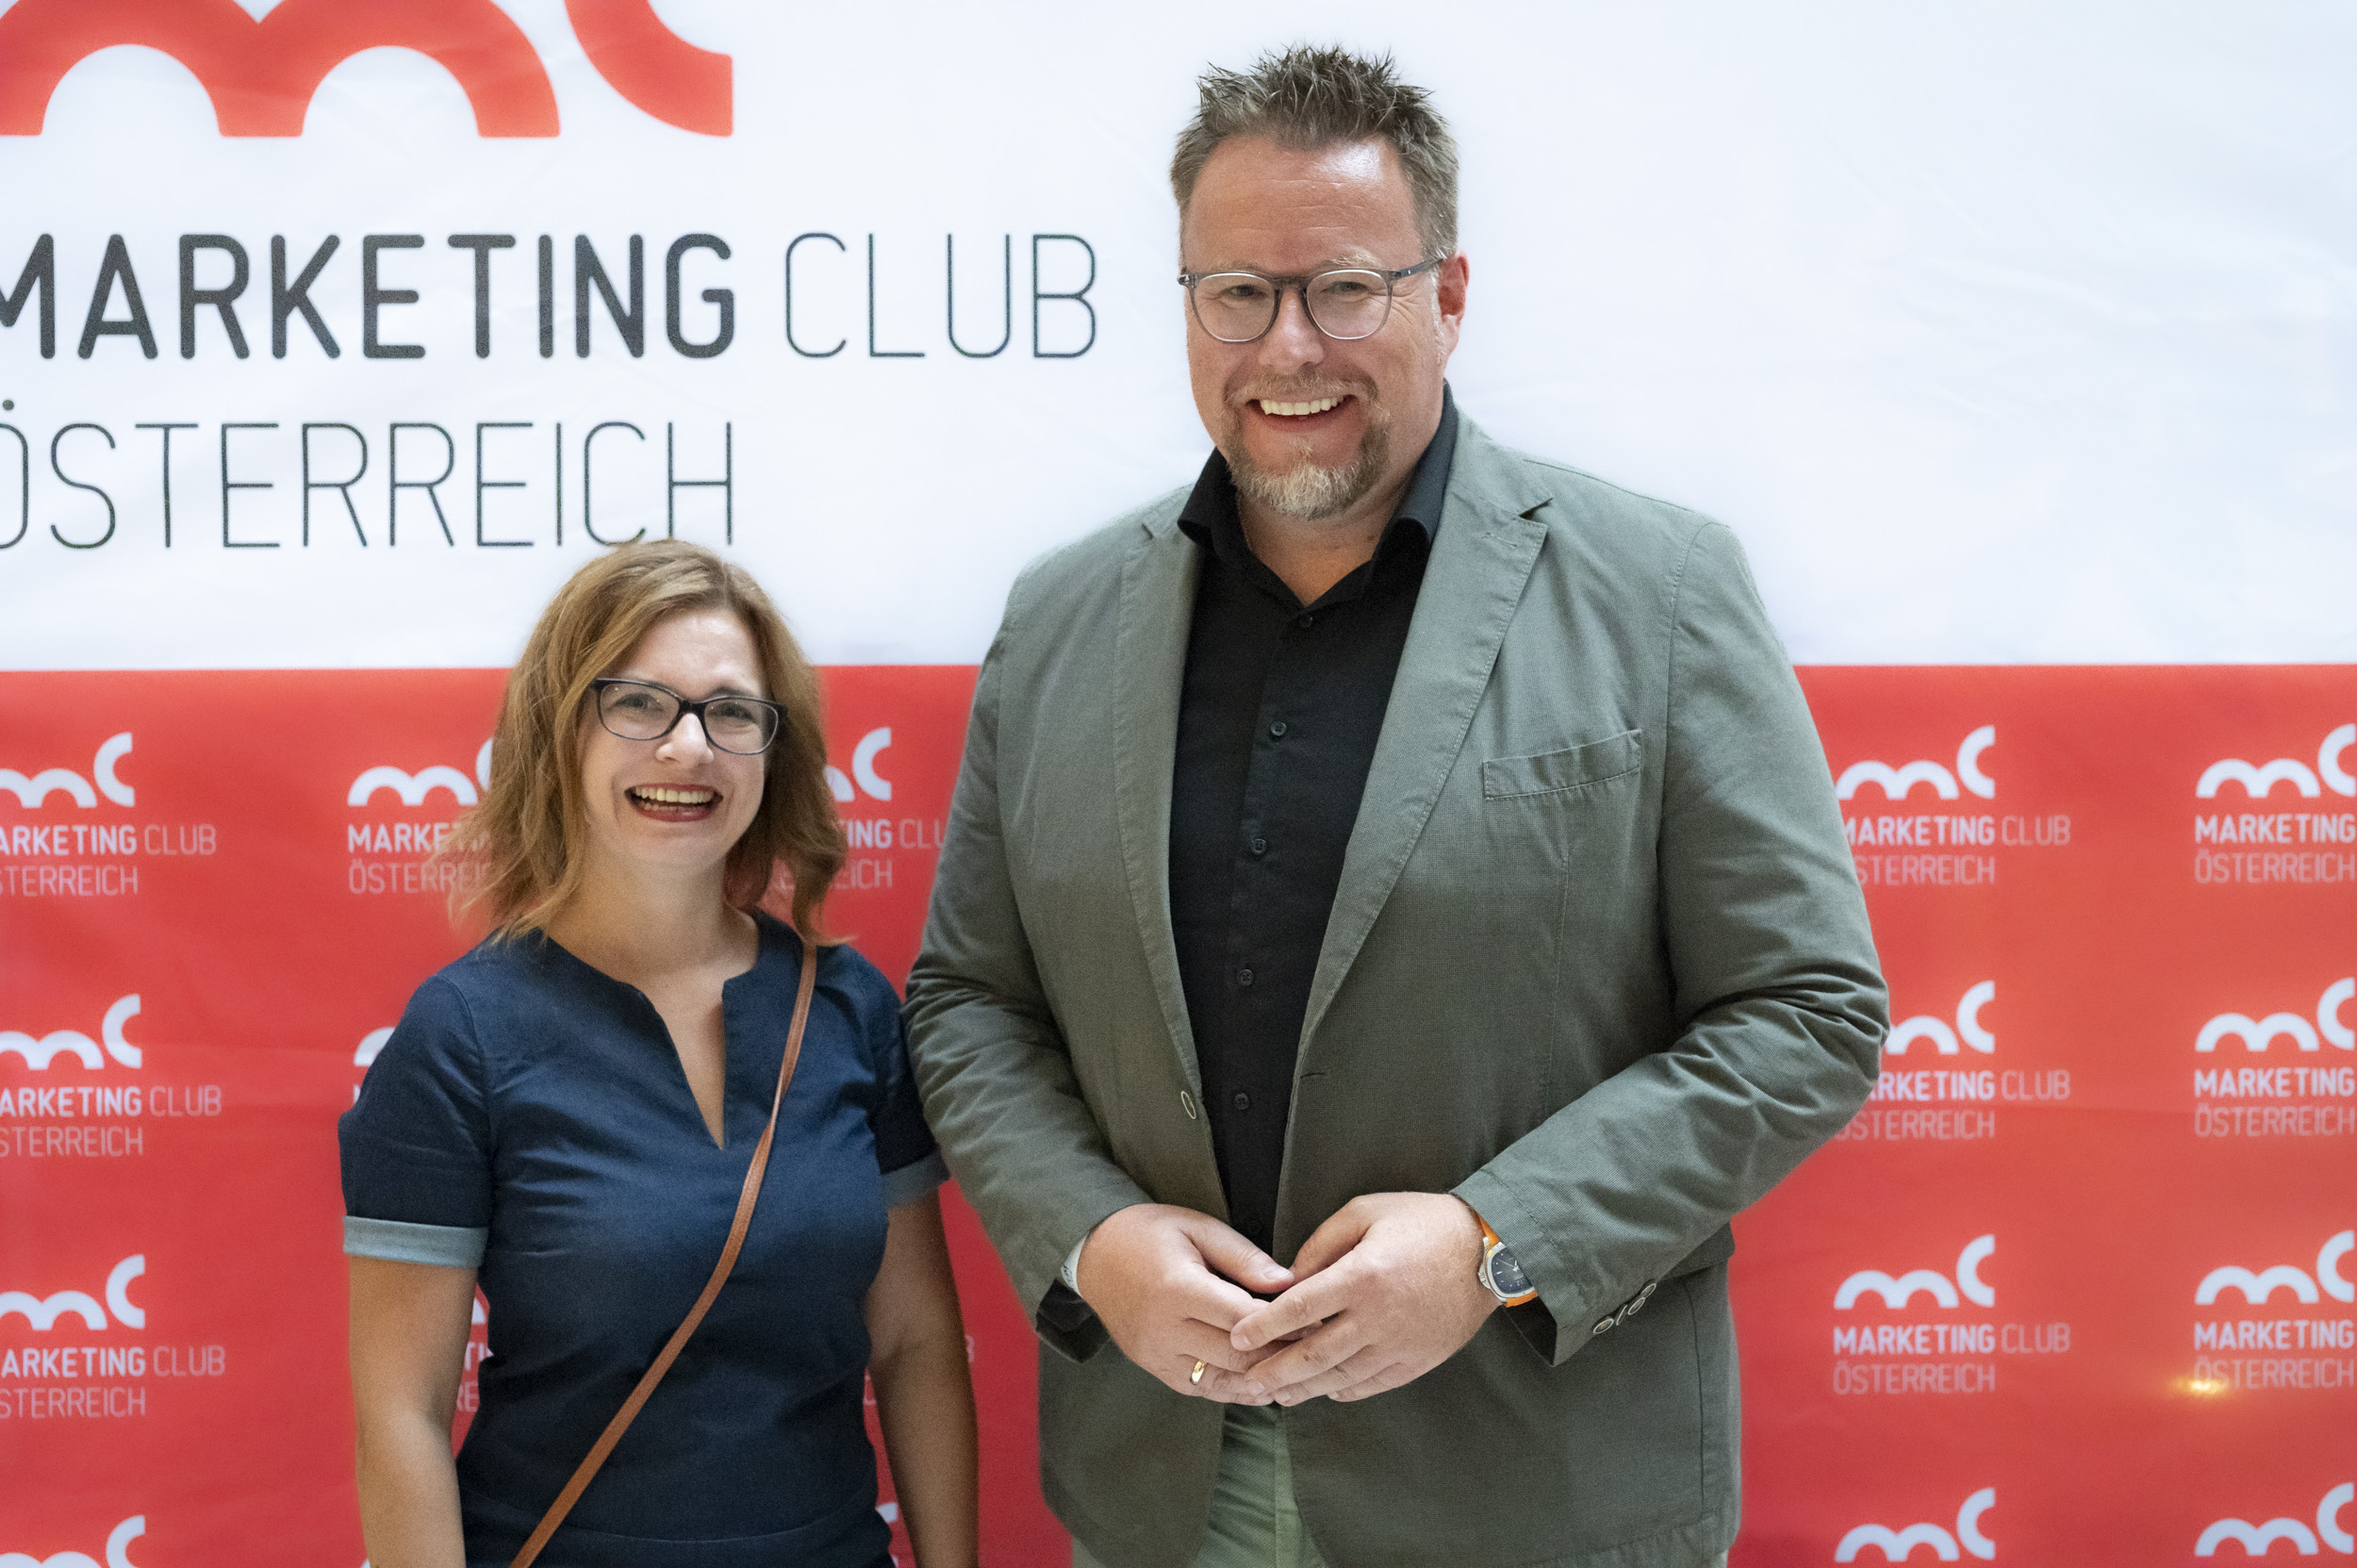 Die besten Fotos von der Fotowand des Marketing Club Österreich bei der Verleihung der Marketing Leader of the year 2022 Awards